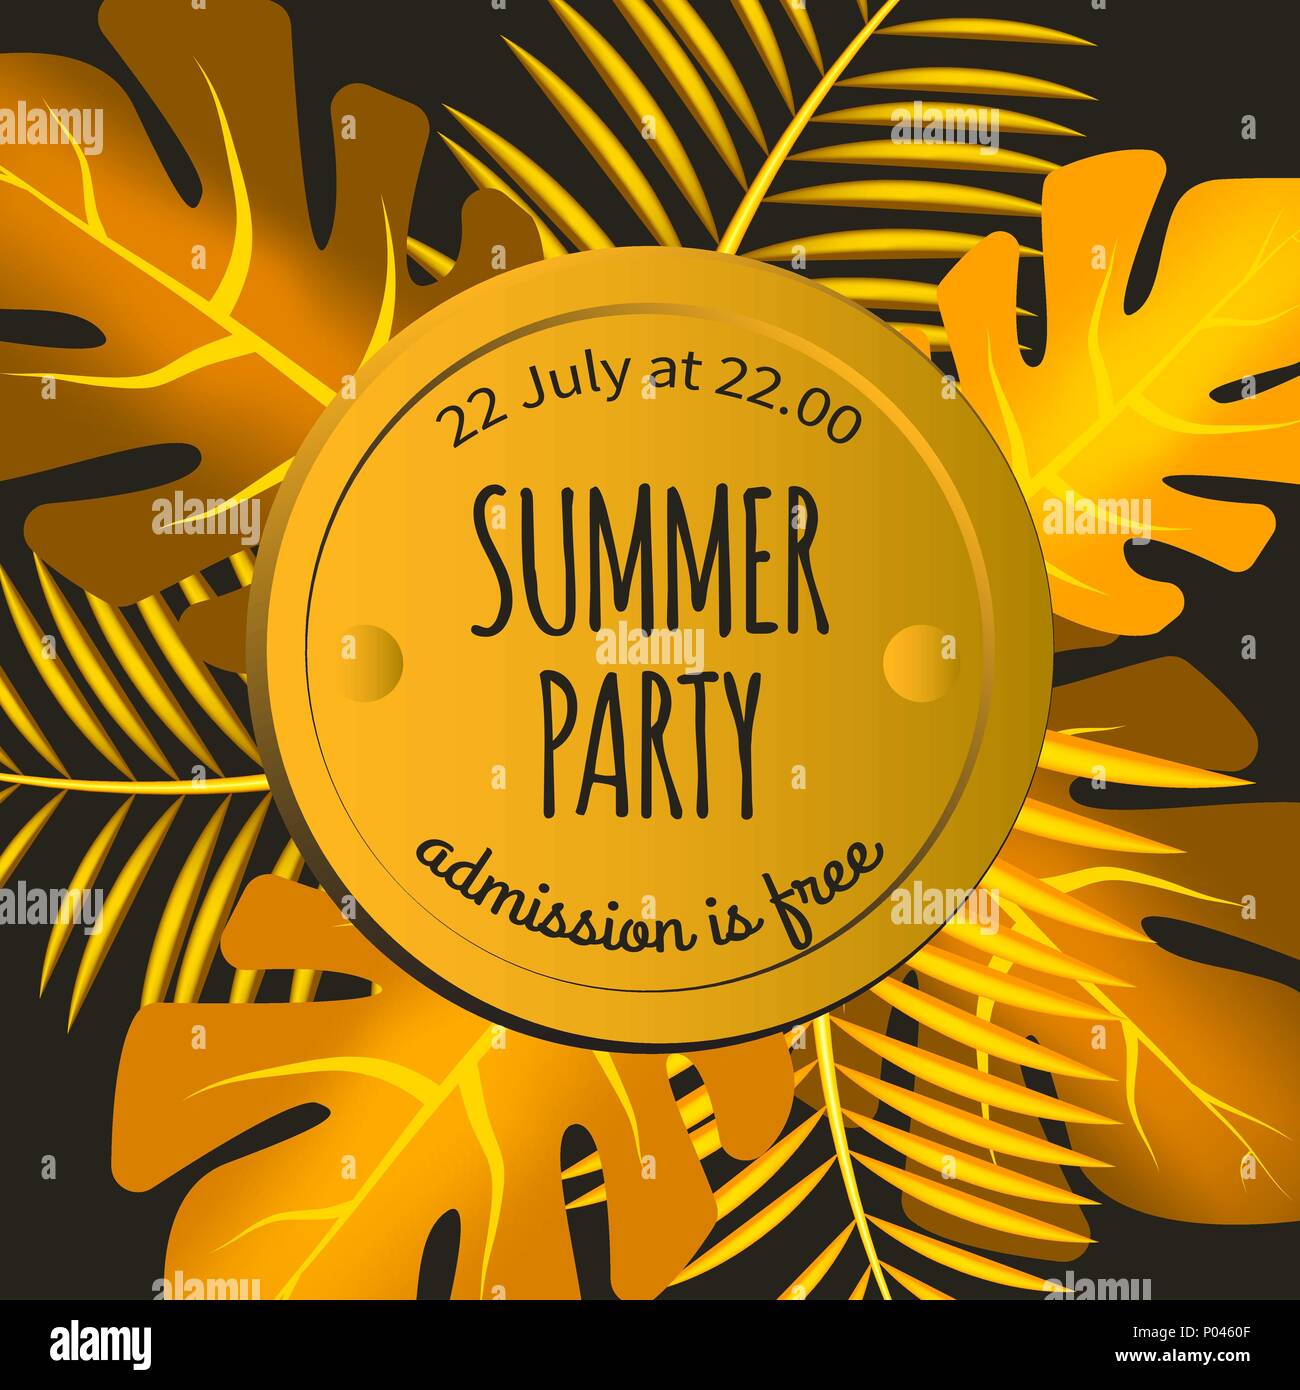 Einladung Zum Sommerfest Mit Gold Der Von Tropischen Palmen Blatter Schwarz Und Gold Banner Flyer Rahmen Mit Blattern Vector Illustration Stock Vektorgrafik Alamy